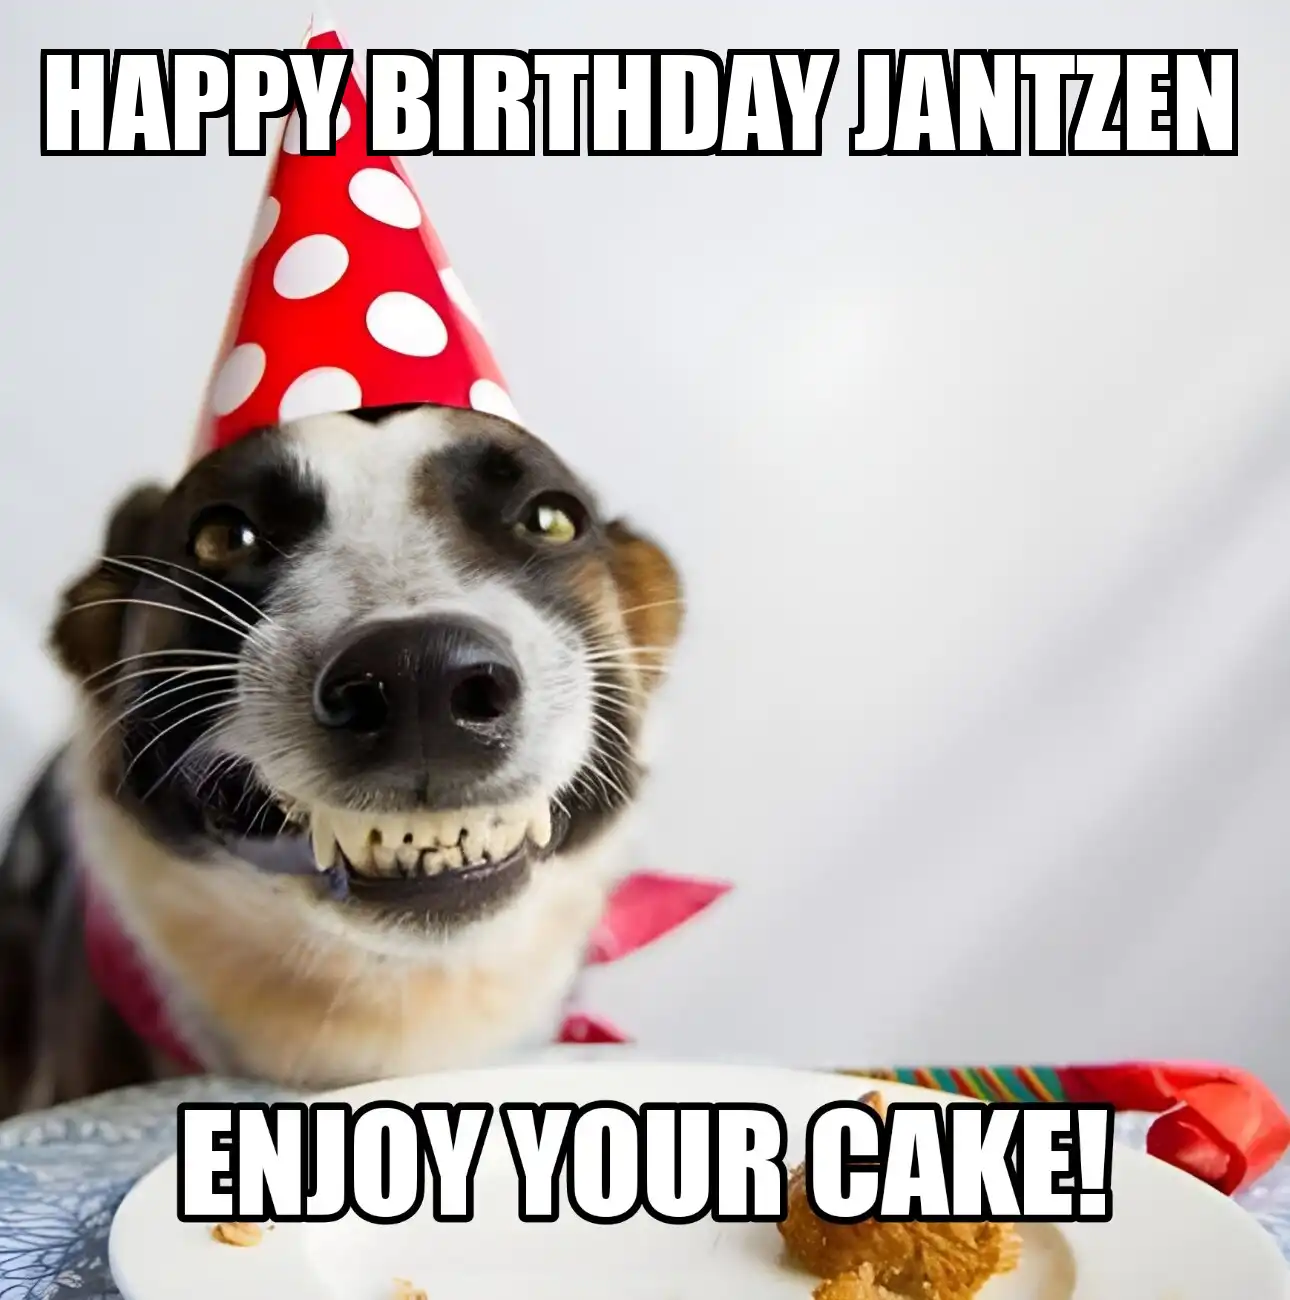 Happy Birthday Jantzen Enjoy Your Cake Dog Meme